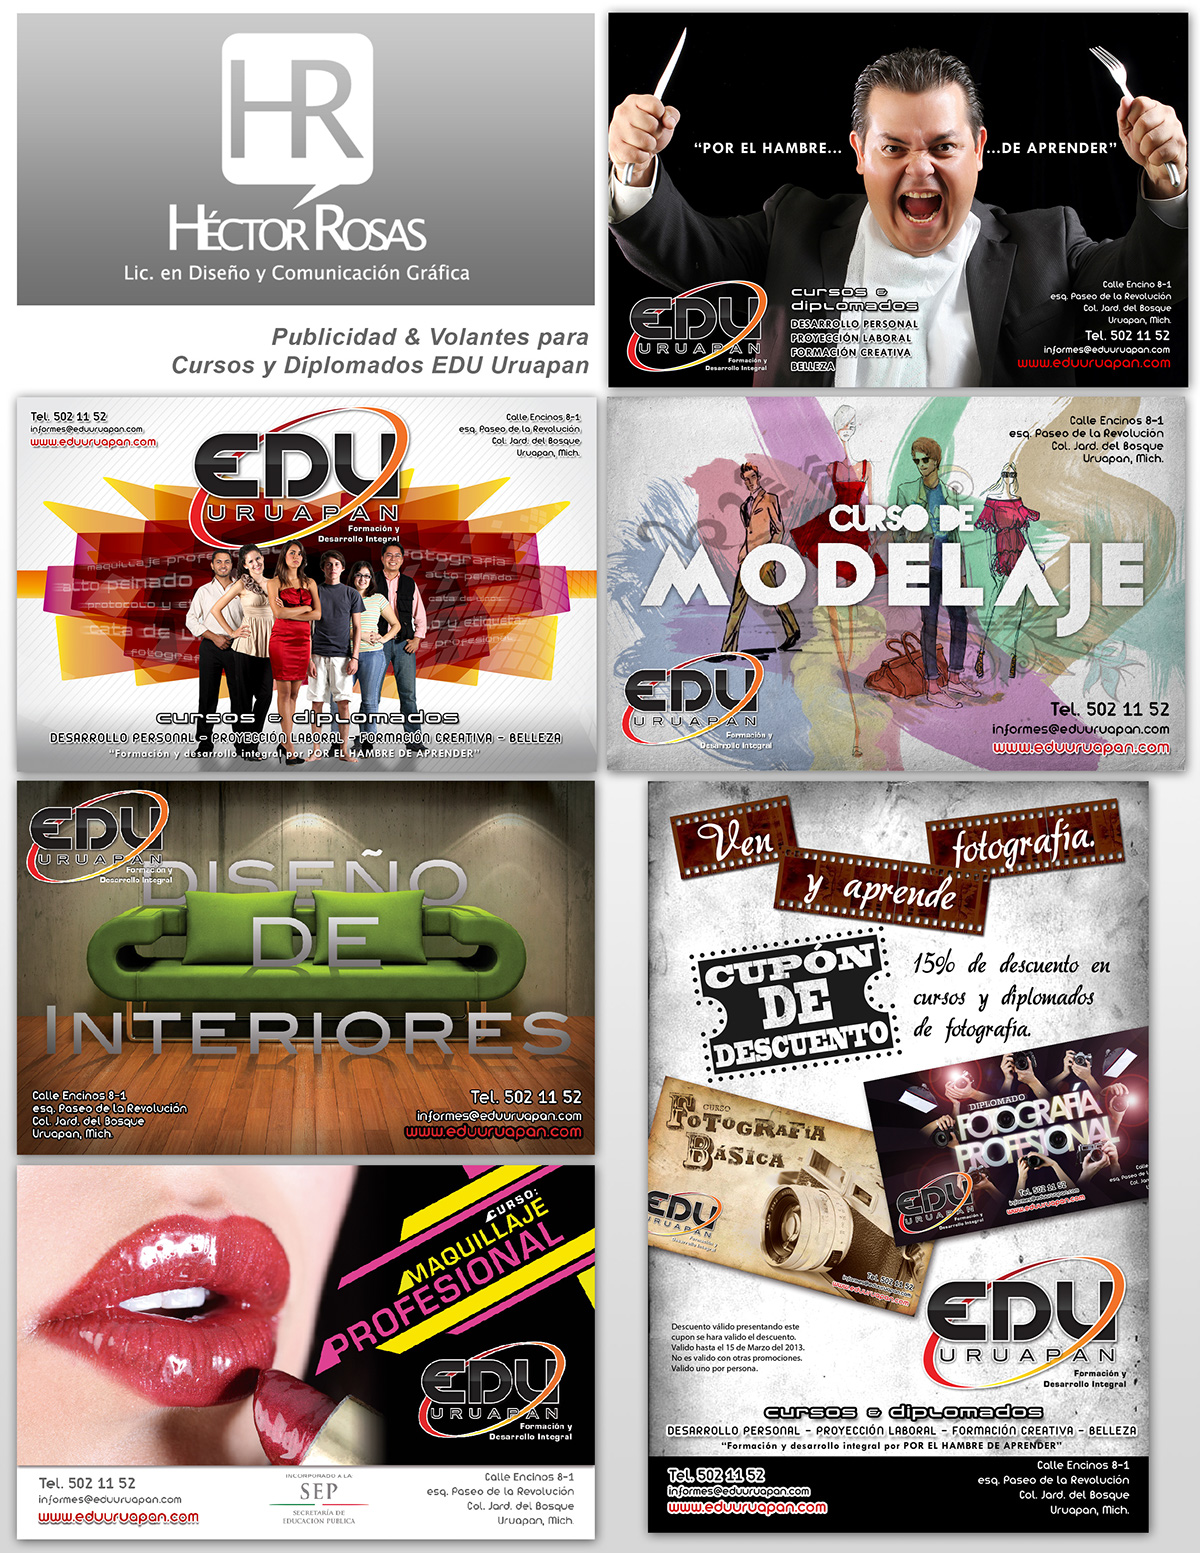 edu uruapan imagen diseño grafico publicidad cursos diplomados